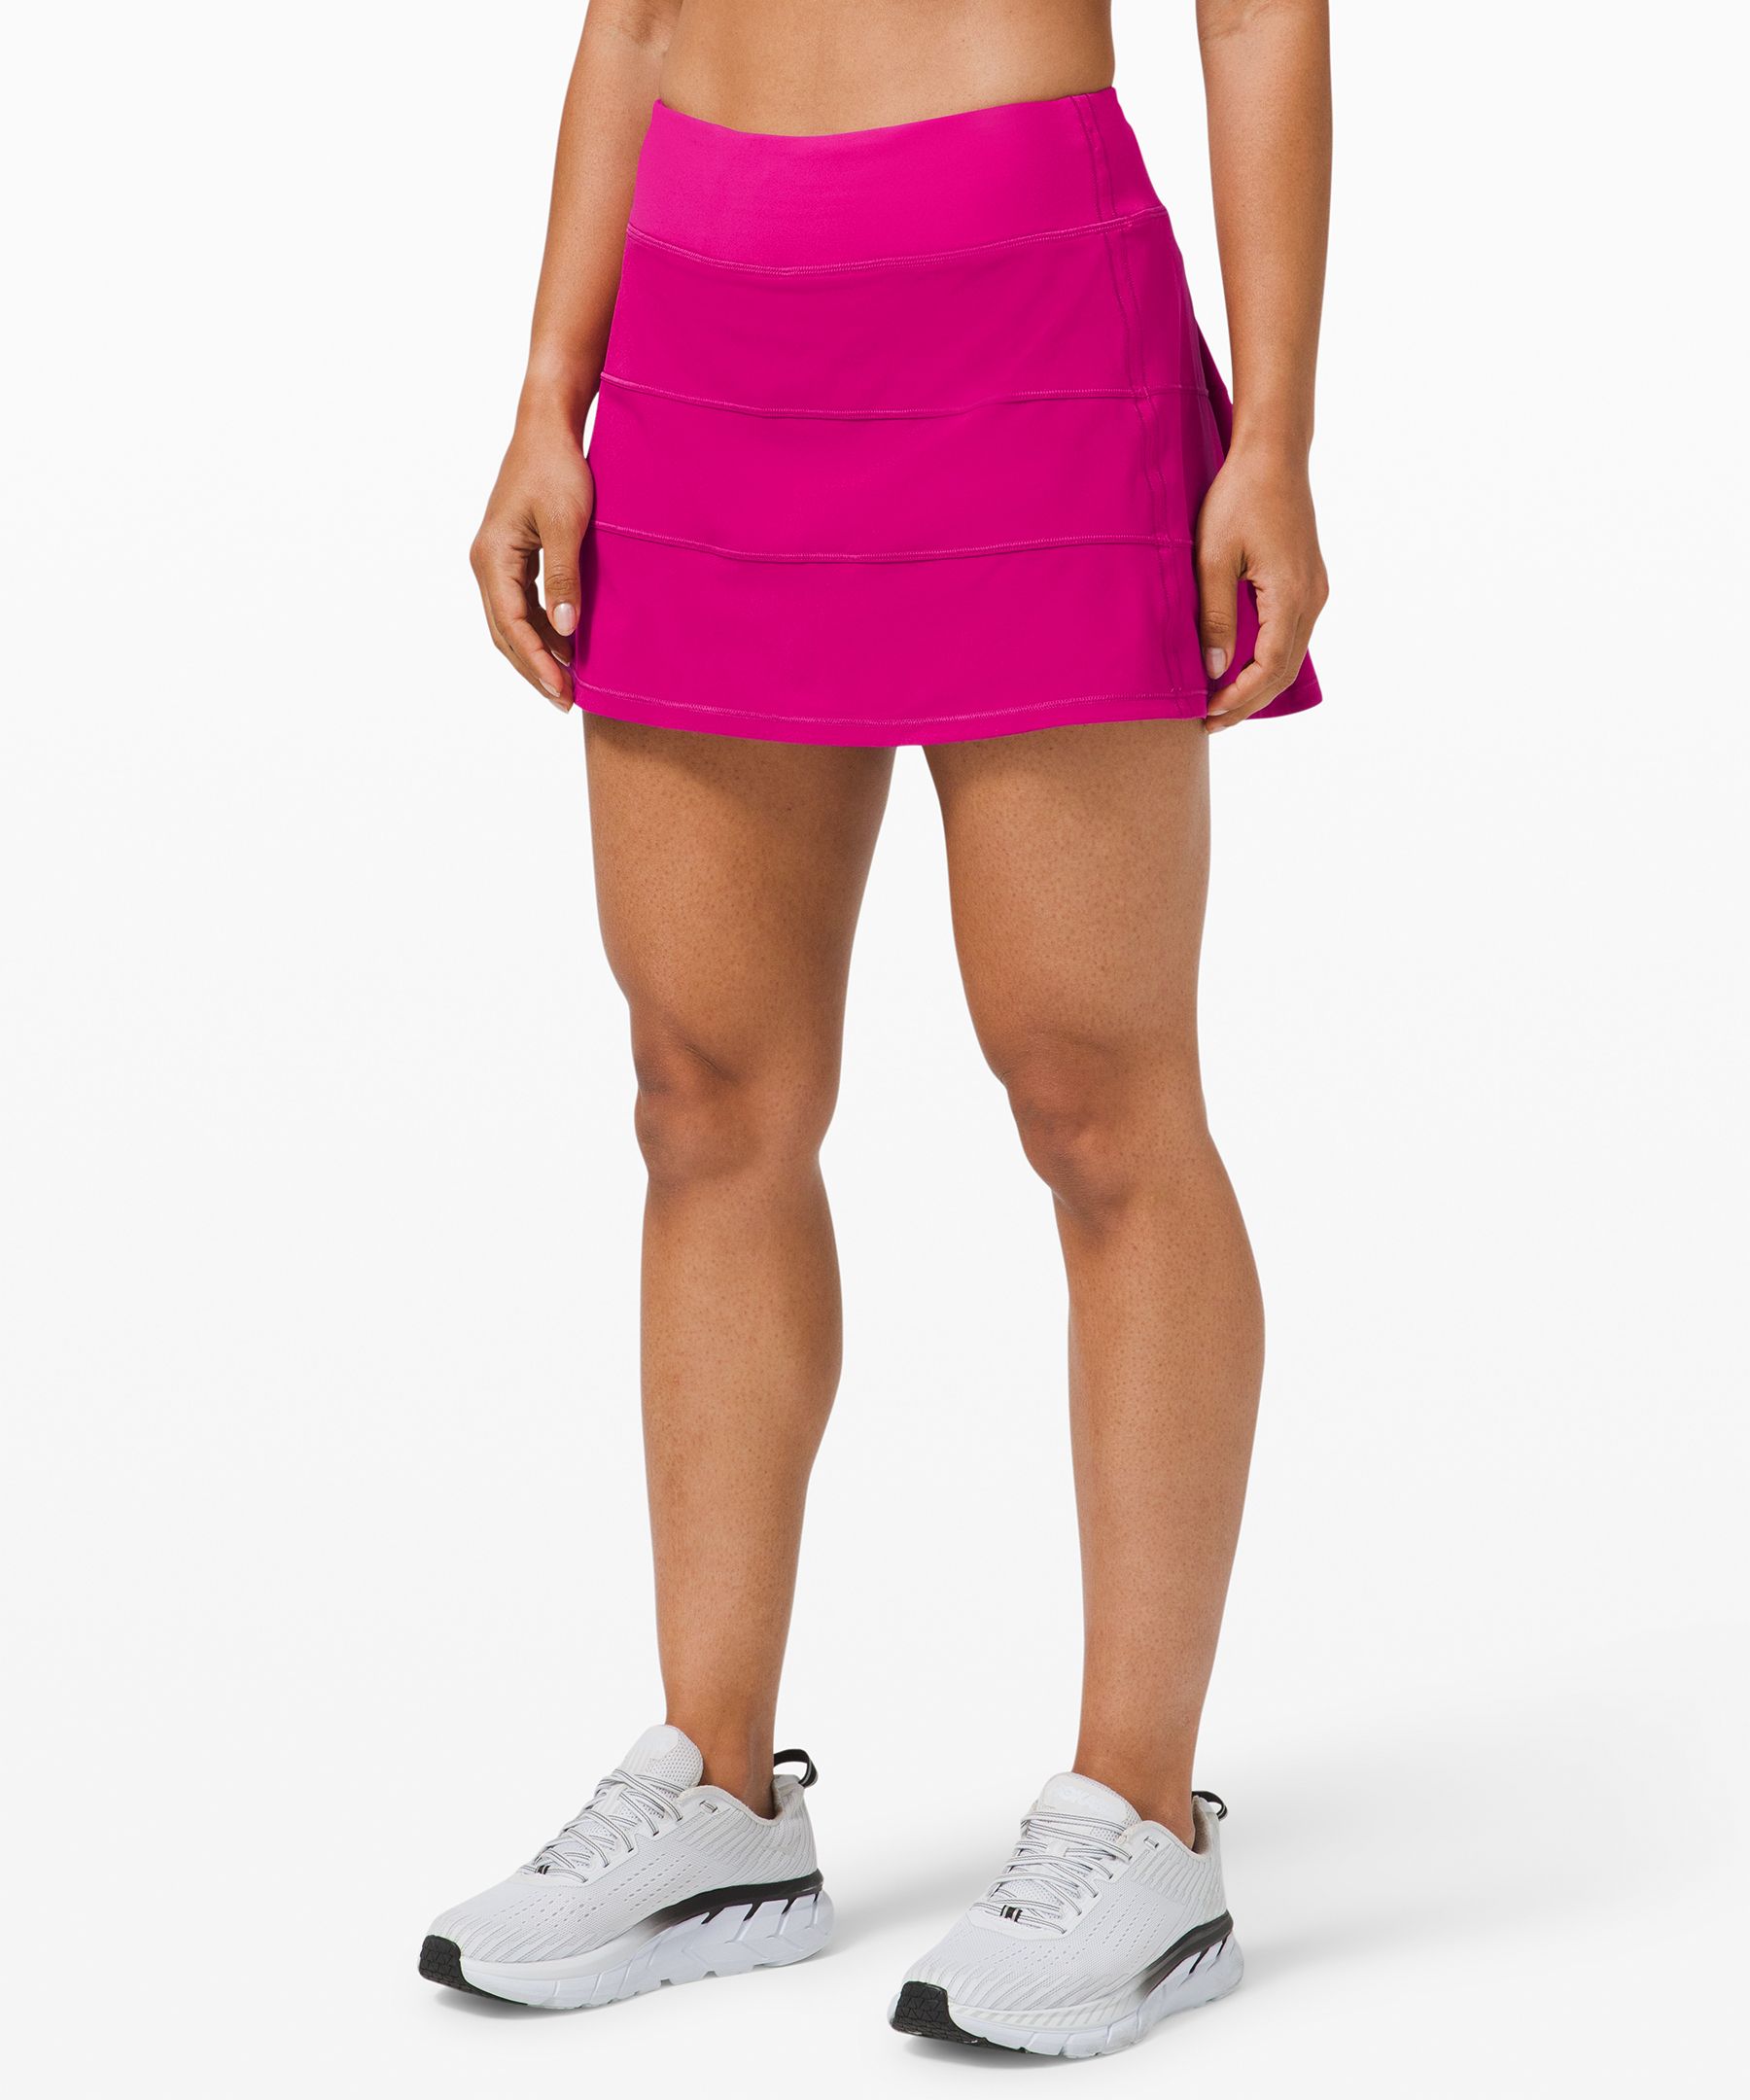 Lululemon Pace Rival Mid-rise Tennis Skirt 15" Length In Ripened Raspberry